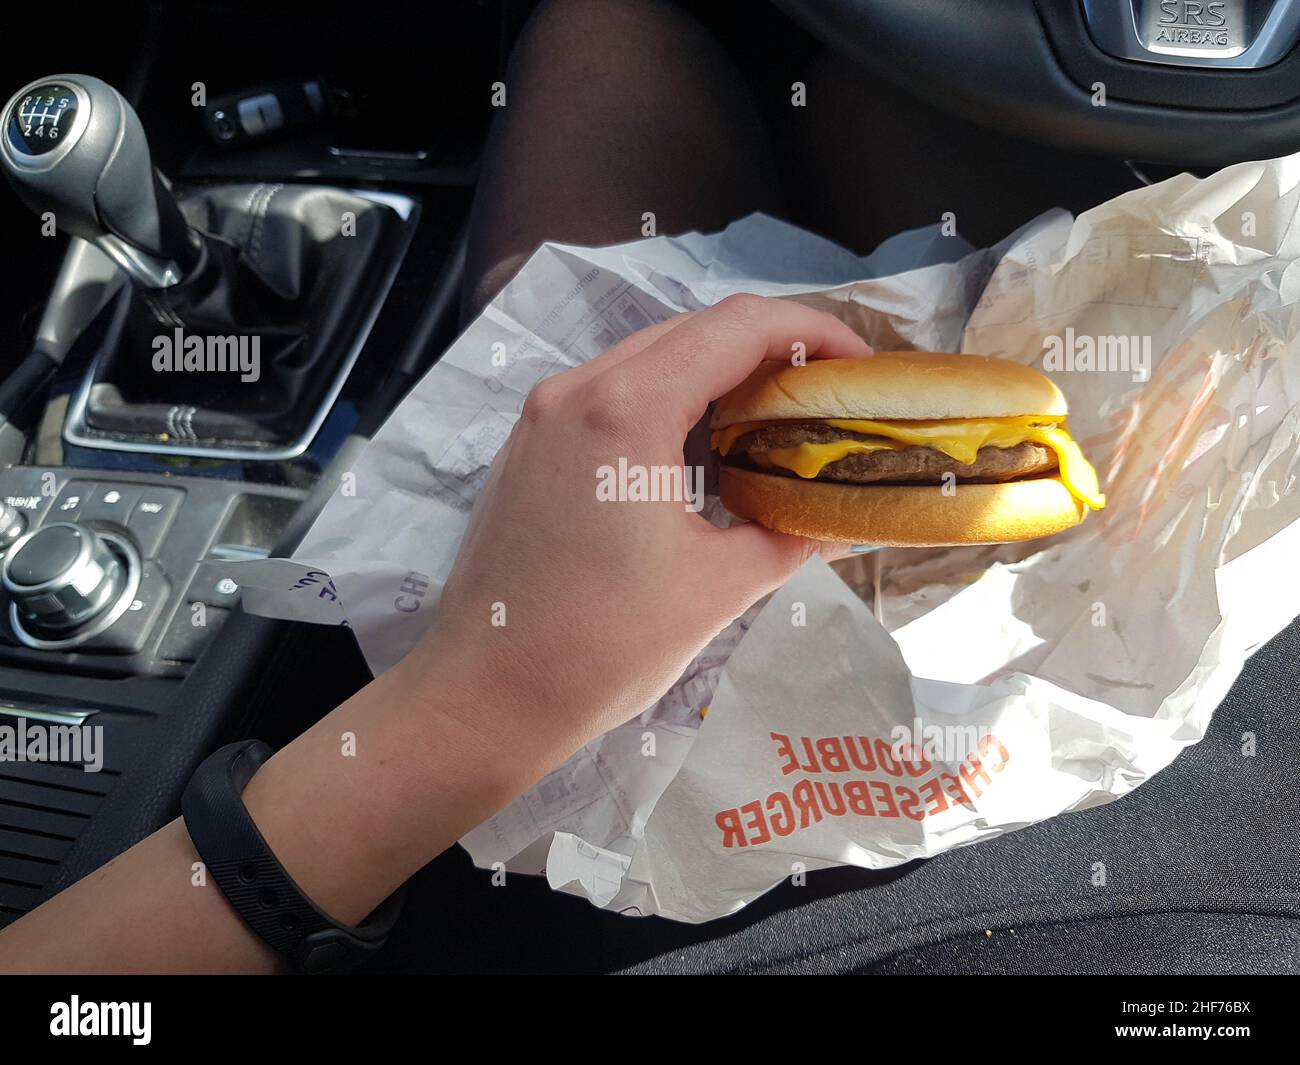 Newcastle upon Tyne, Angleterre - 24th mai 2019 : les femmes mangent un petit déjeuner de hamburger dans leur voiture.Un style de vie d'affaires très animé ayant recours au déjeuner au drive-in o Banque D'Images